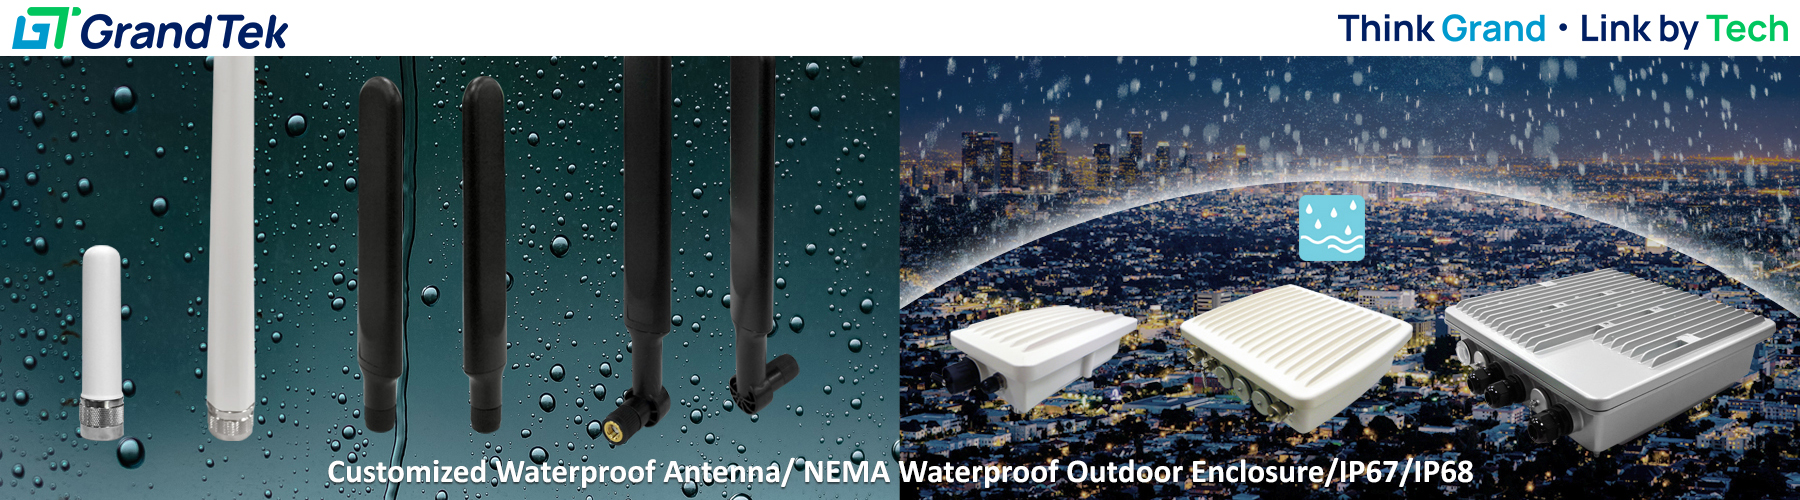 nema waterproof /nema weatherproof outdoor enclosure/ipex